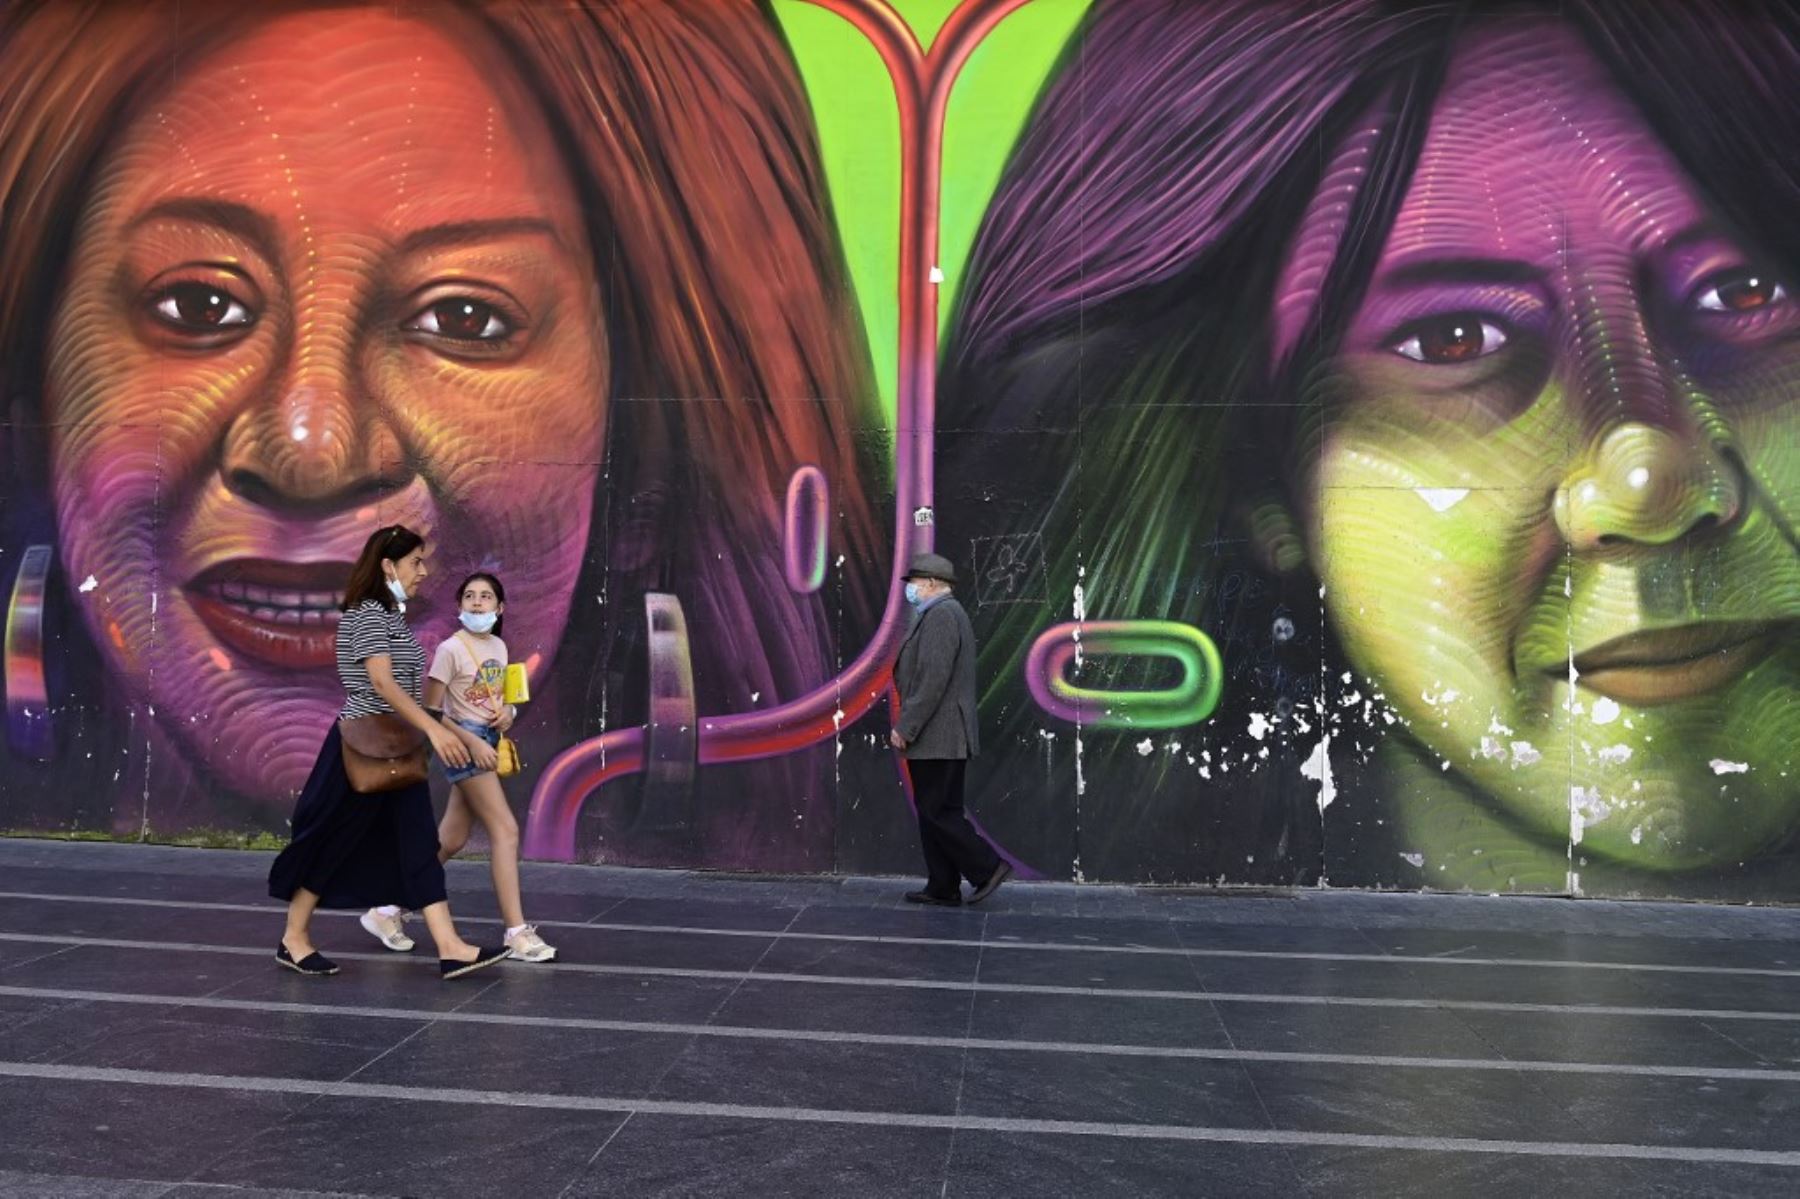 Las personas que usan máscaras pasan junto a un mural en Madrid, ya que el uso de máscaras se hizo obligatorio en público donde no es posible el distanciamiento social. 
Foto: AFP